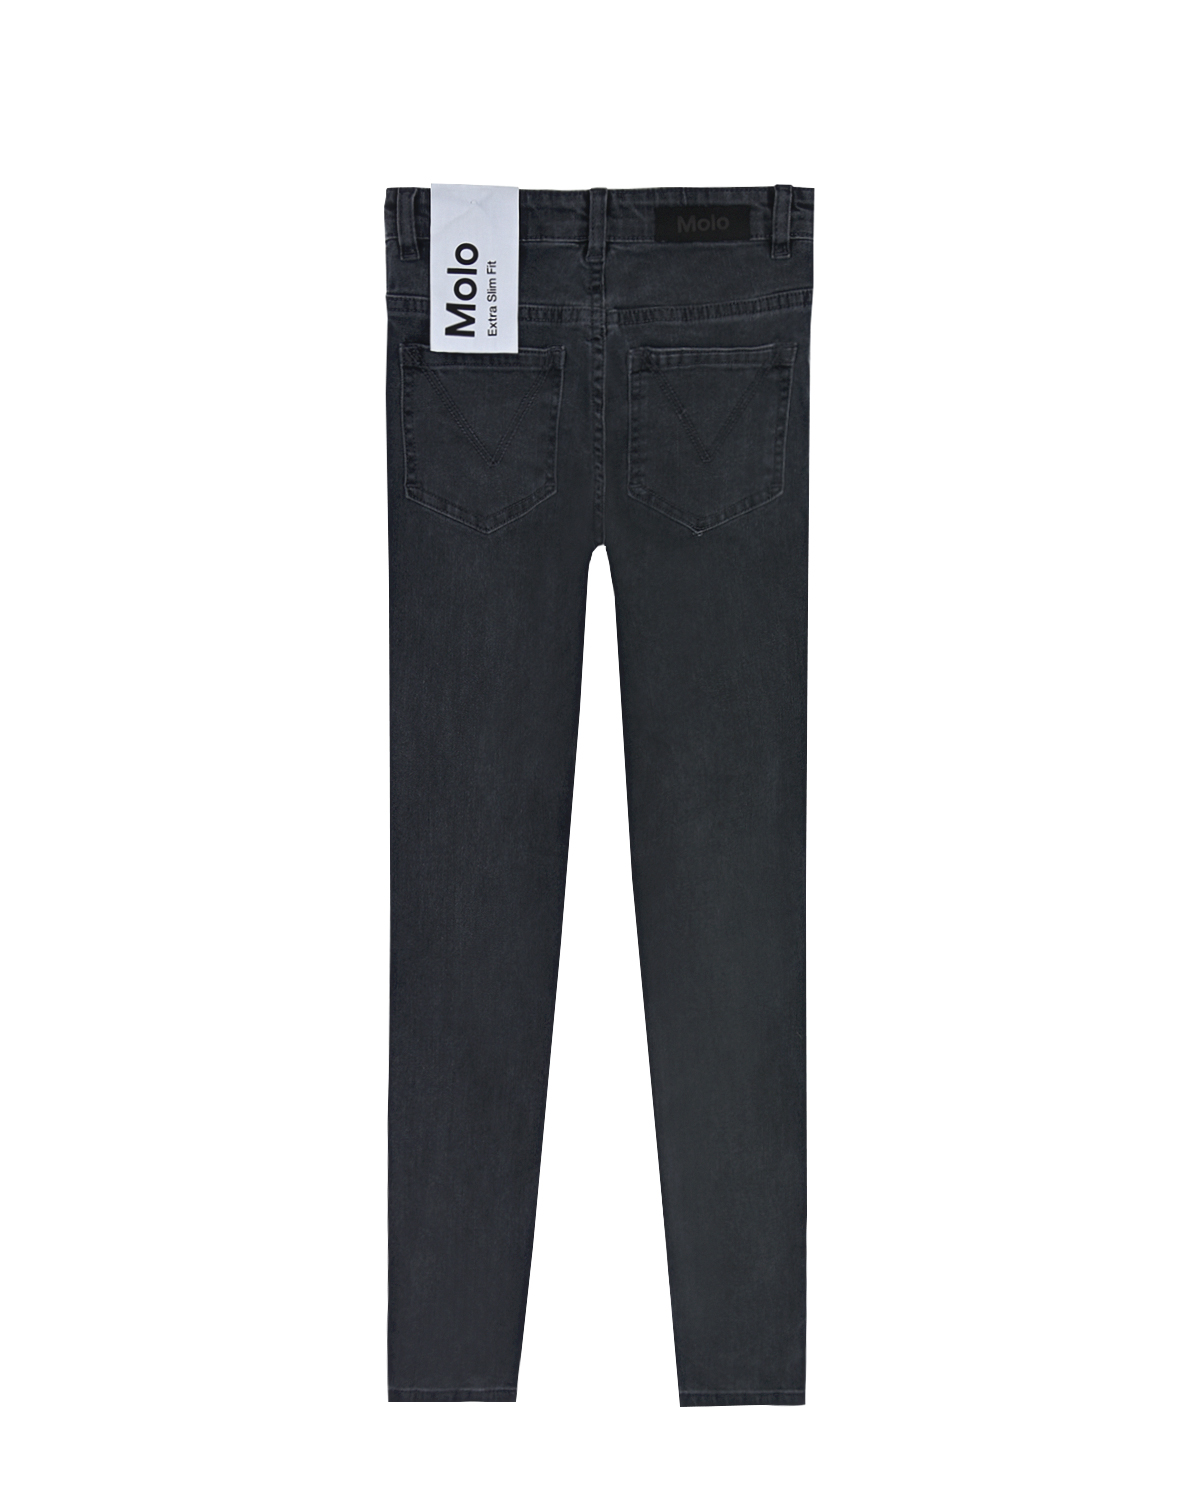 Темно-серые джинсы прямого кроя Molo детское, размер 128, цвет серый - фото 2